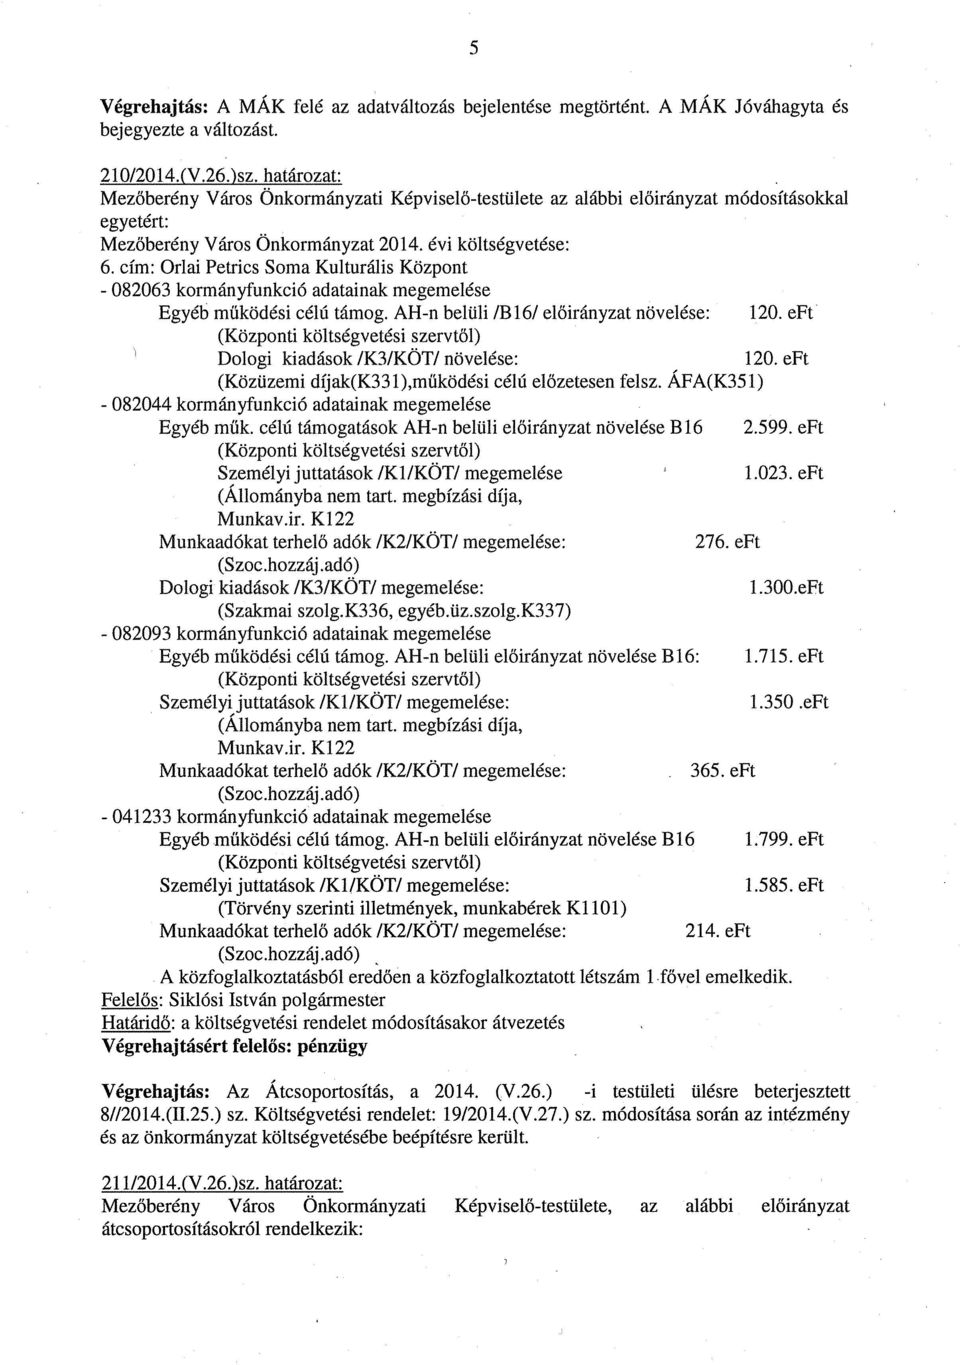 Cím: Orlai Petrics Soma Kulturális Központ - 082063 kormányfunkció adatainak megemelése Egyéb működési Célú támog. AH-n belüli /B16/ előirányzat növelése: 120.